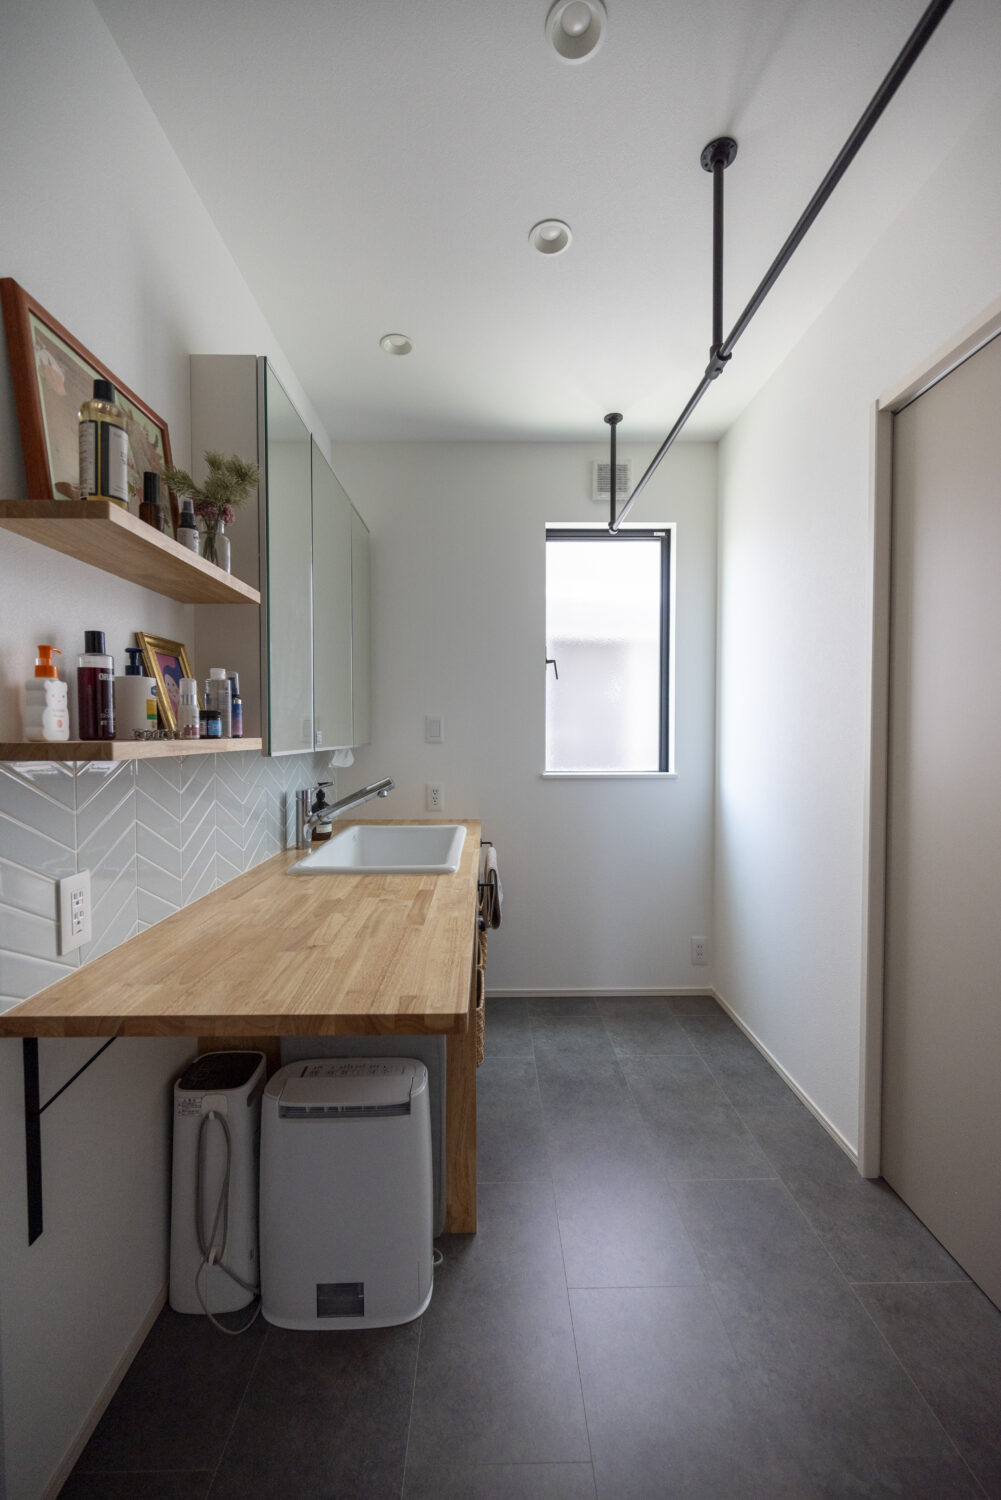 広島県福山市
アイデザインホーム
注文住宅
洗面室にはランドリーパイプを設けて。作業台も広く、家事ラクな空間になっています